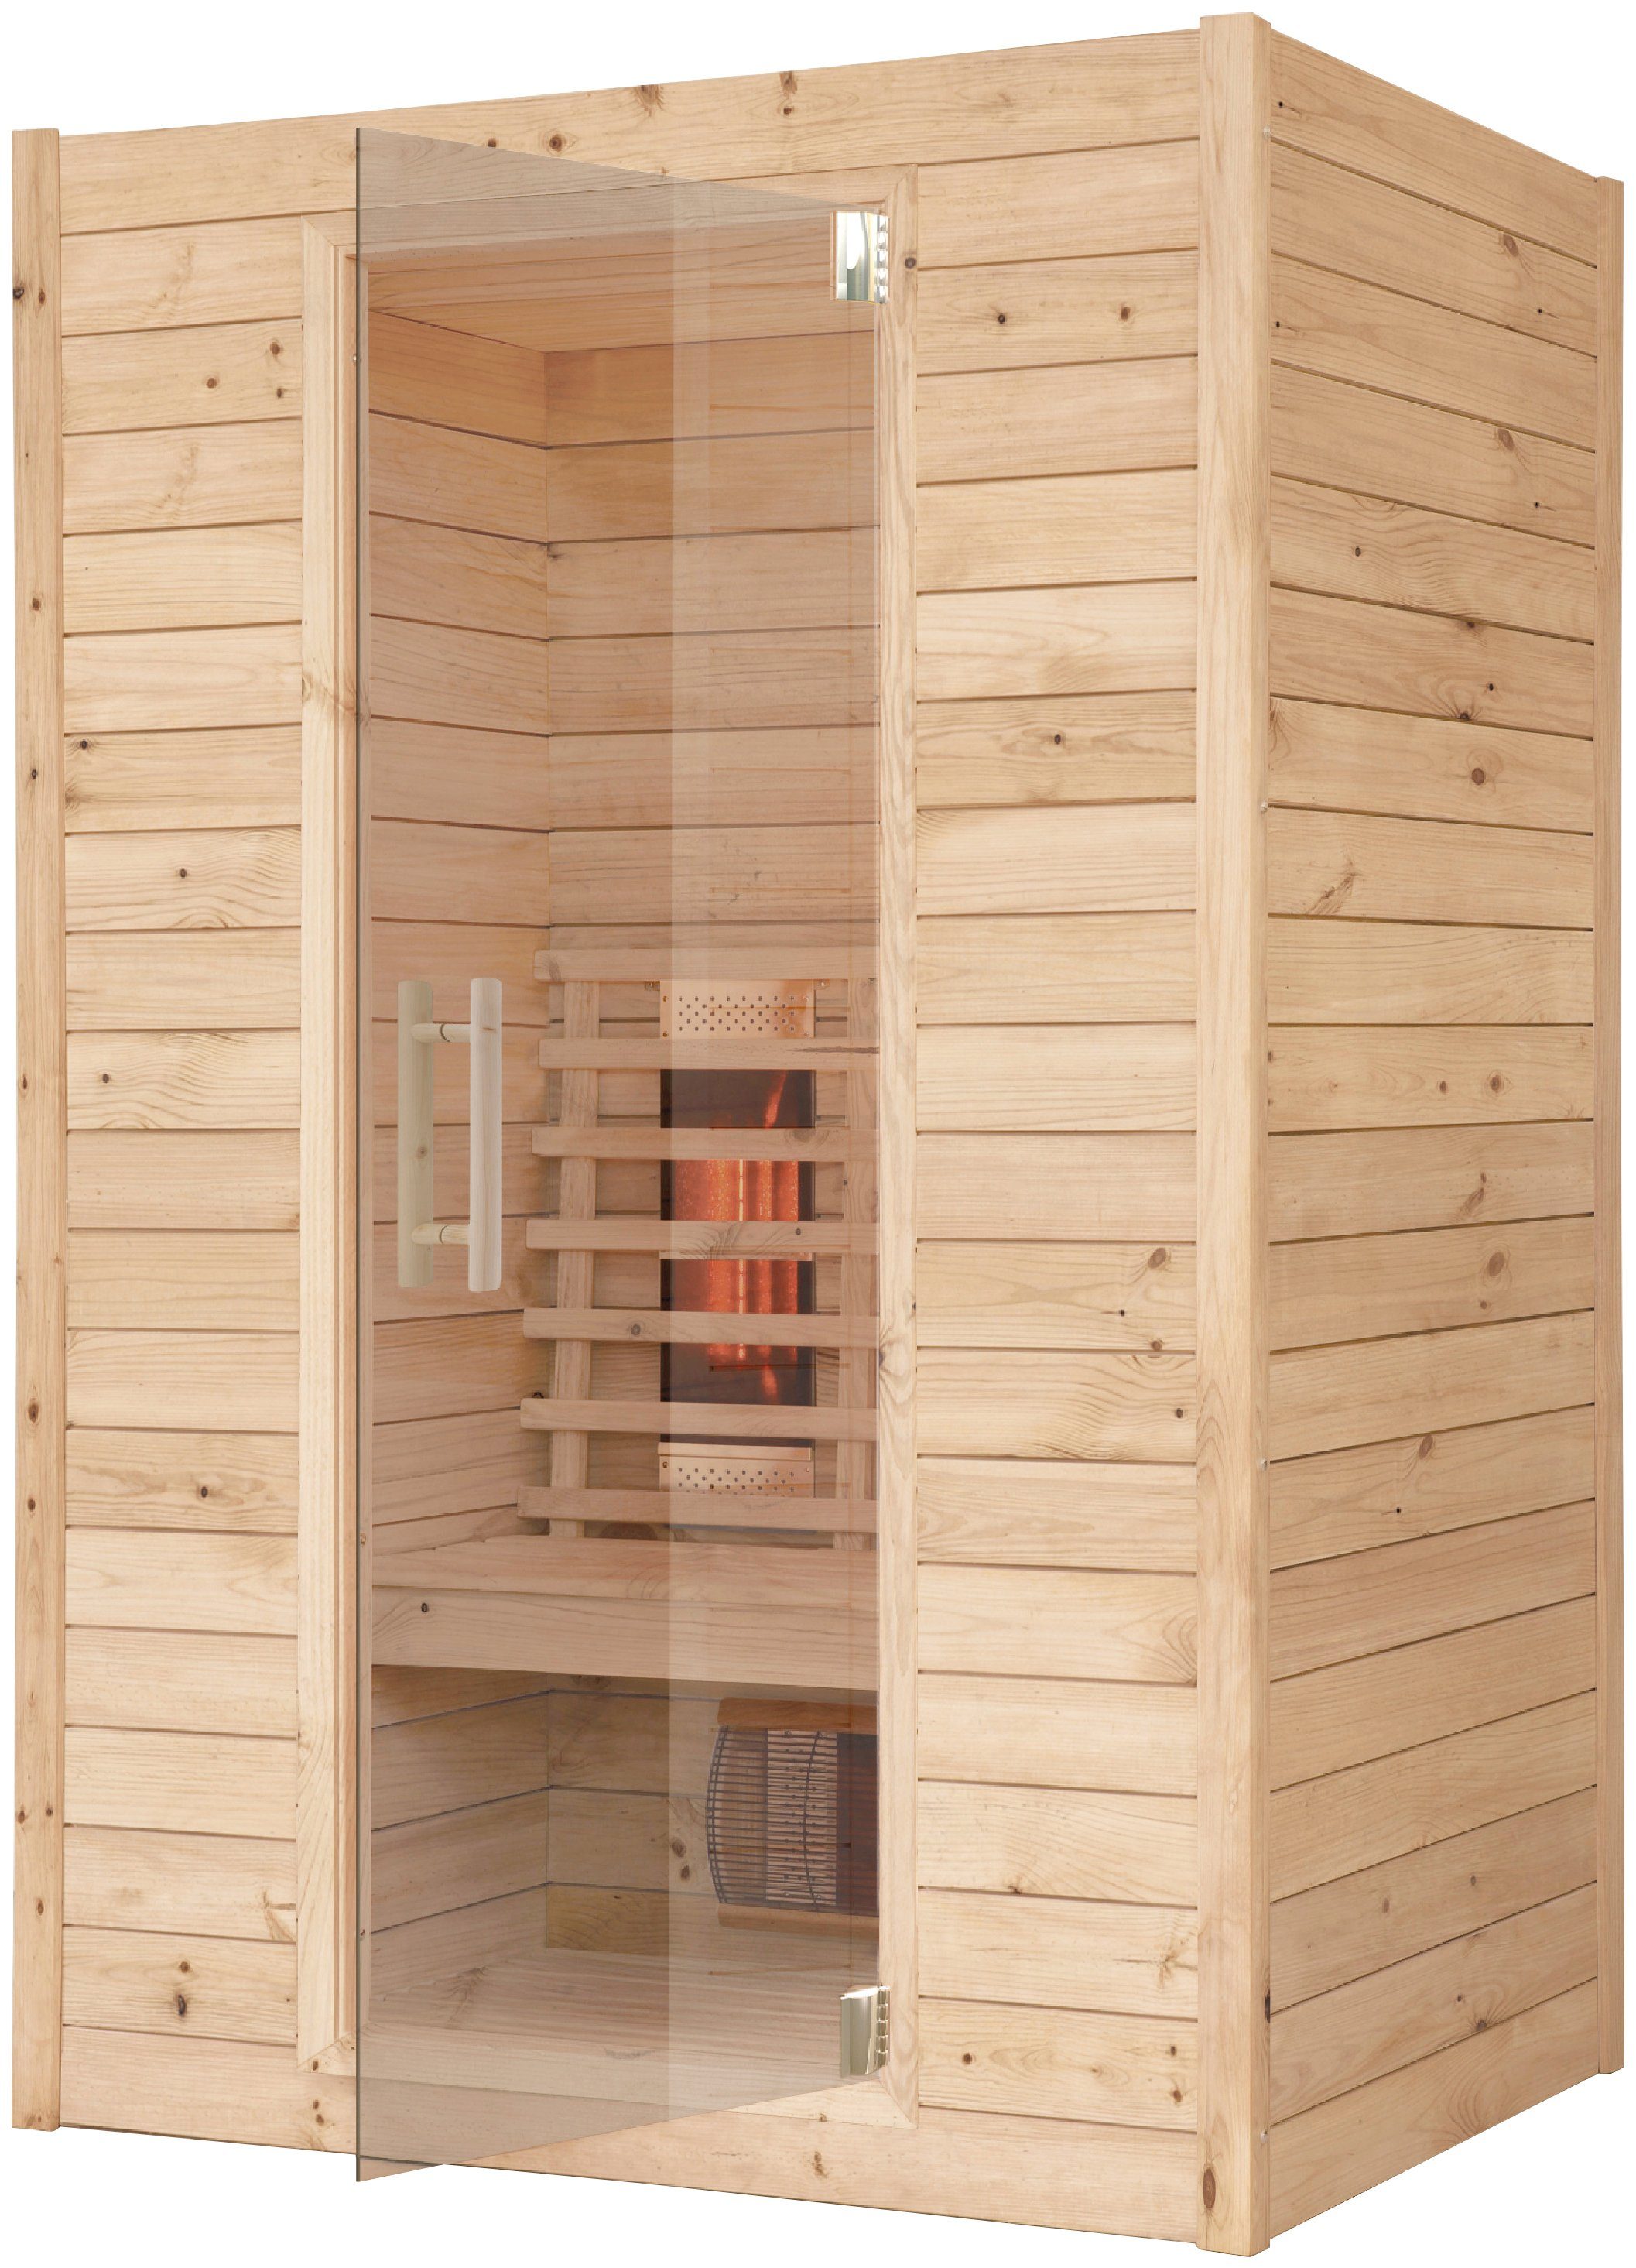 RORO Sauna & Spa Infrarotkabine ABN D431, BxTxH: 132 x 102 x 198 cm, 45 mm, Fronteinstieg, inkl Fußboden und Steuergerät